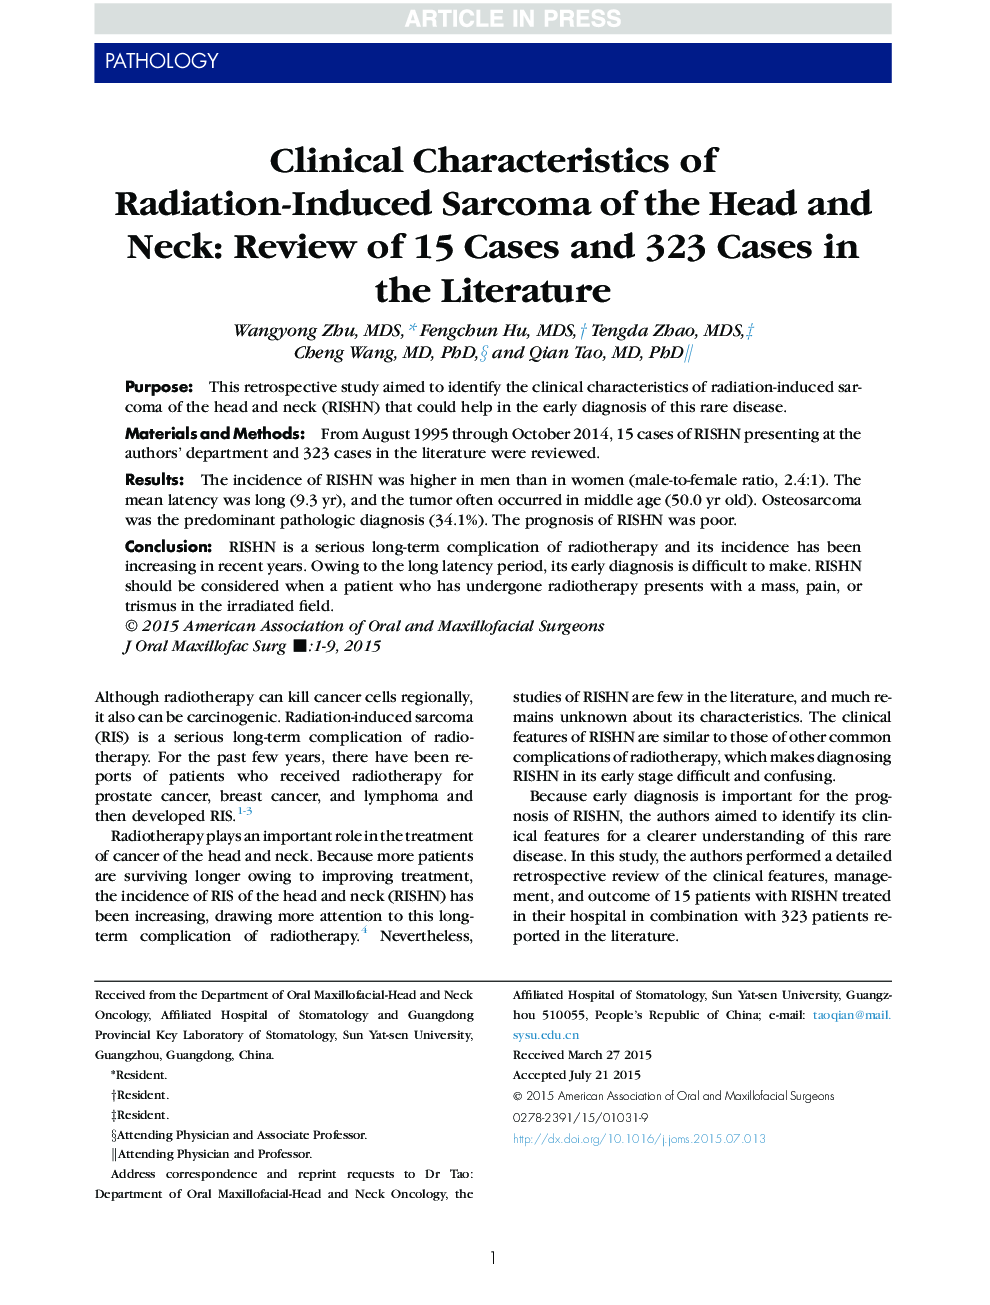 ویژگی های بالینی سارکوم ناشی از رادیواکتیو سر و گردن: بررسی 15 مورد و 323 مورد در ادبیات 